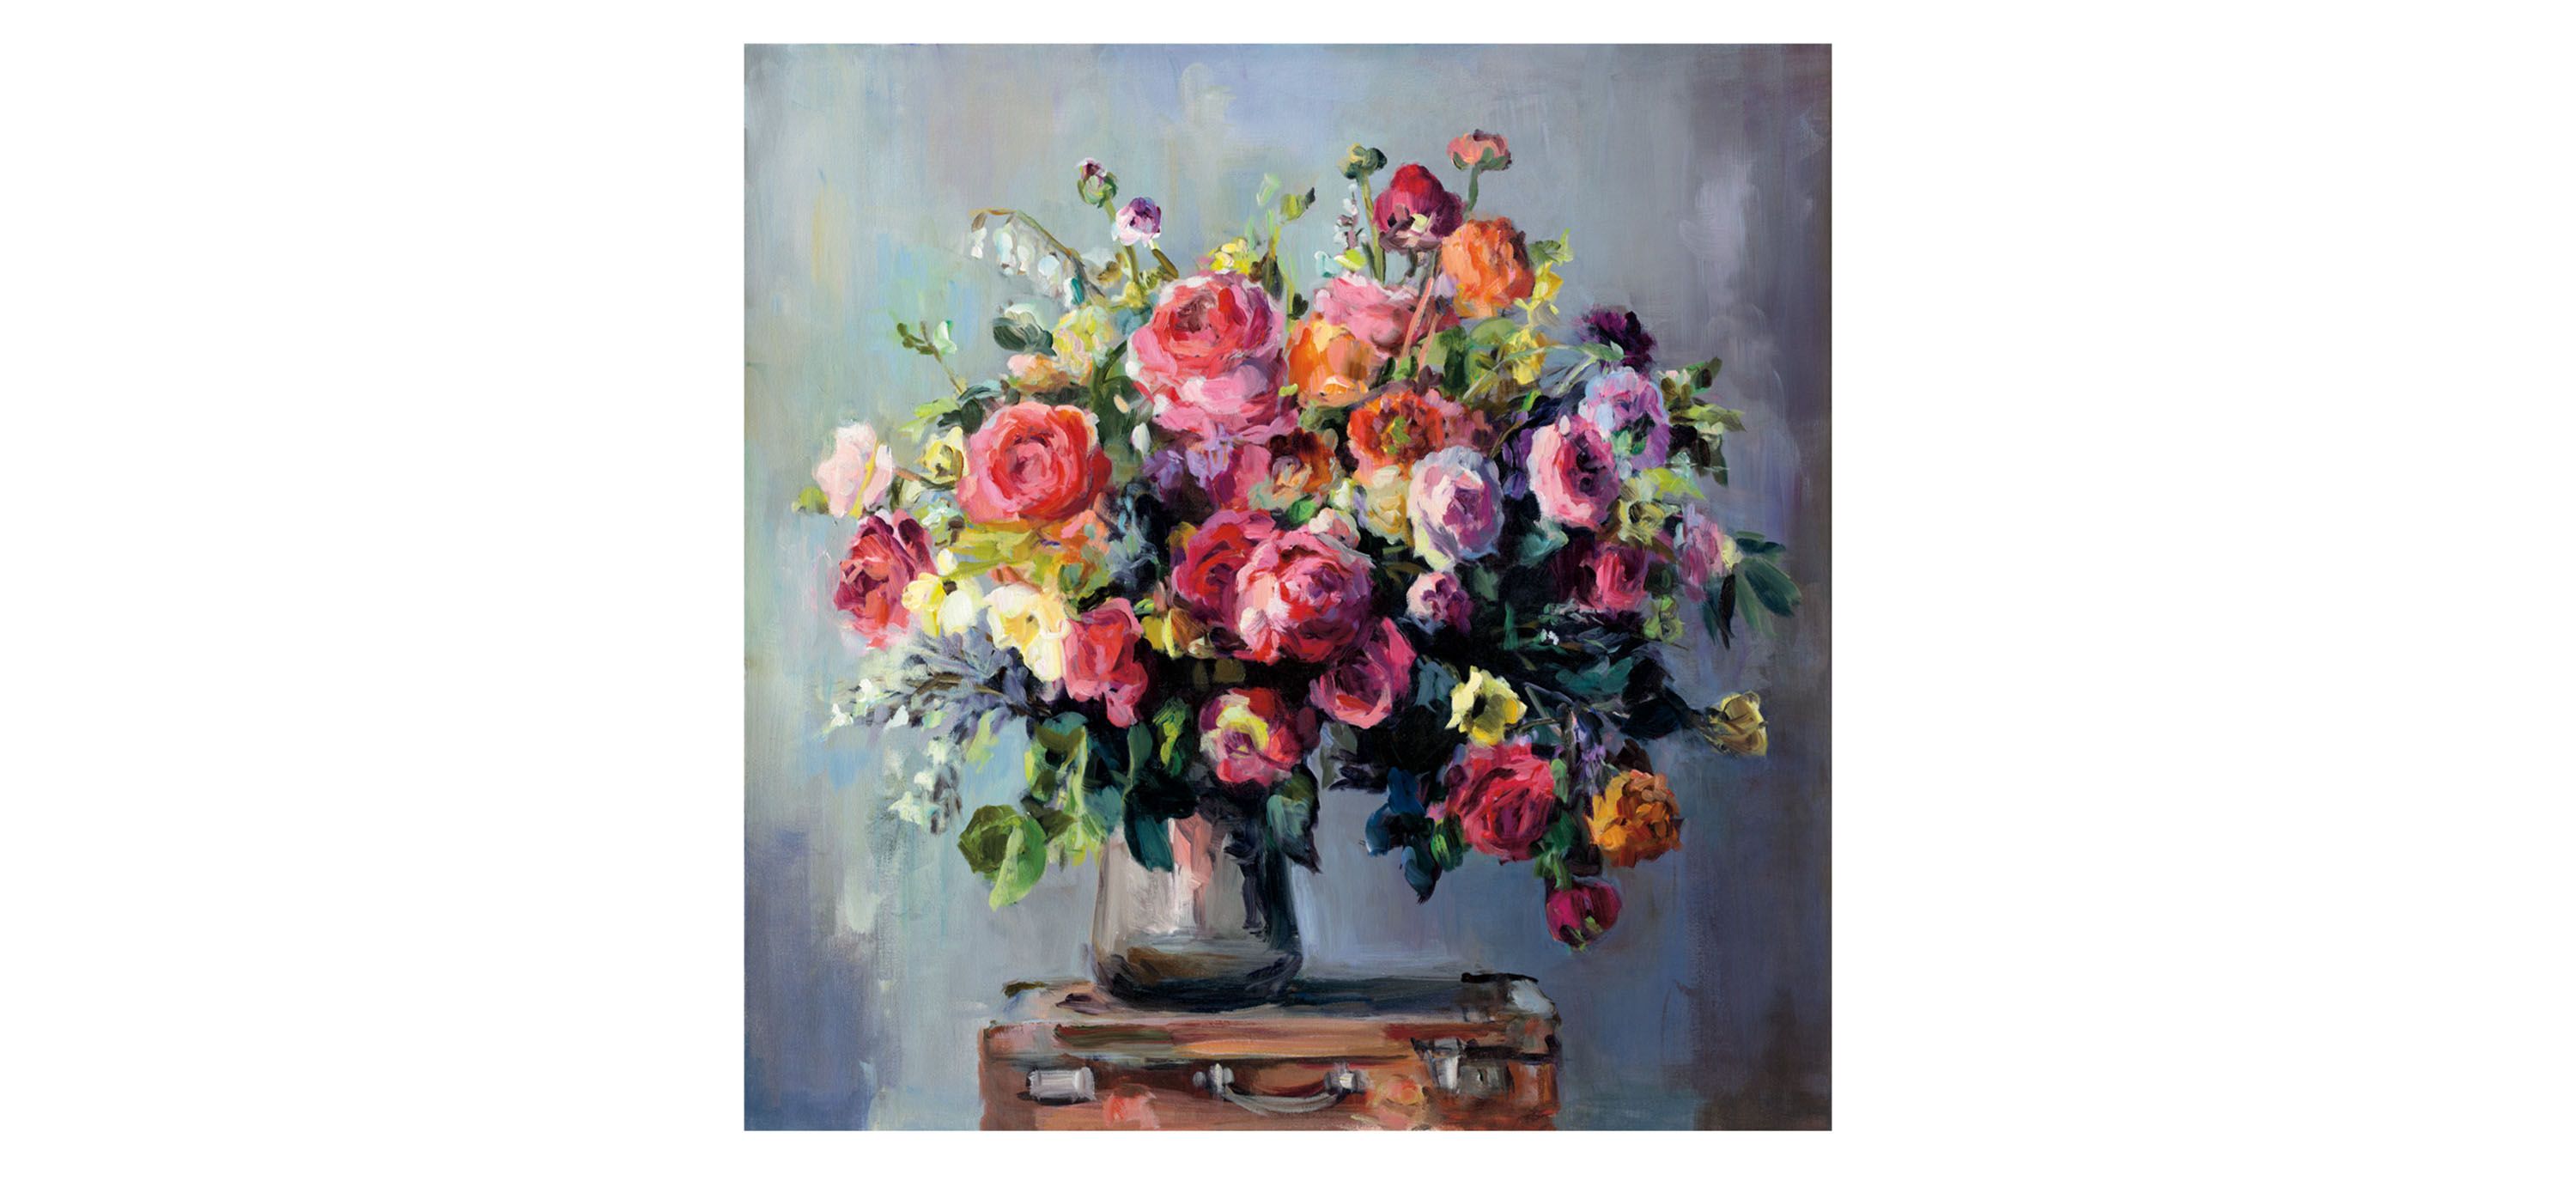 Abundant Bouquet by Marilyn Hageman